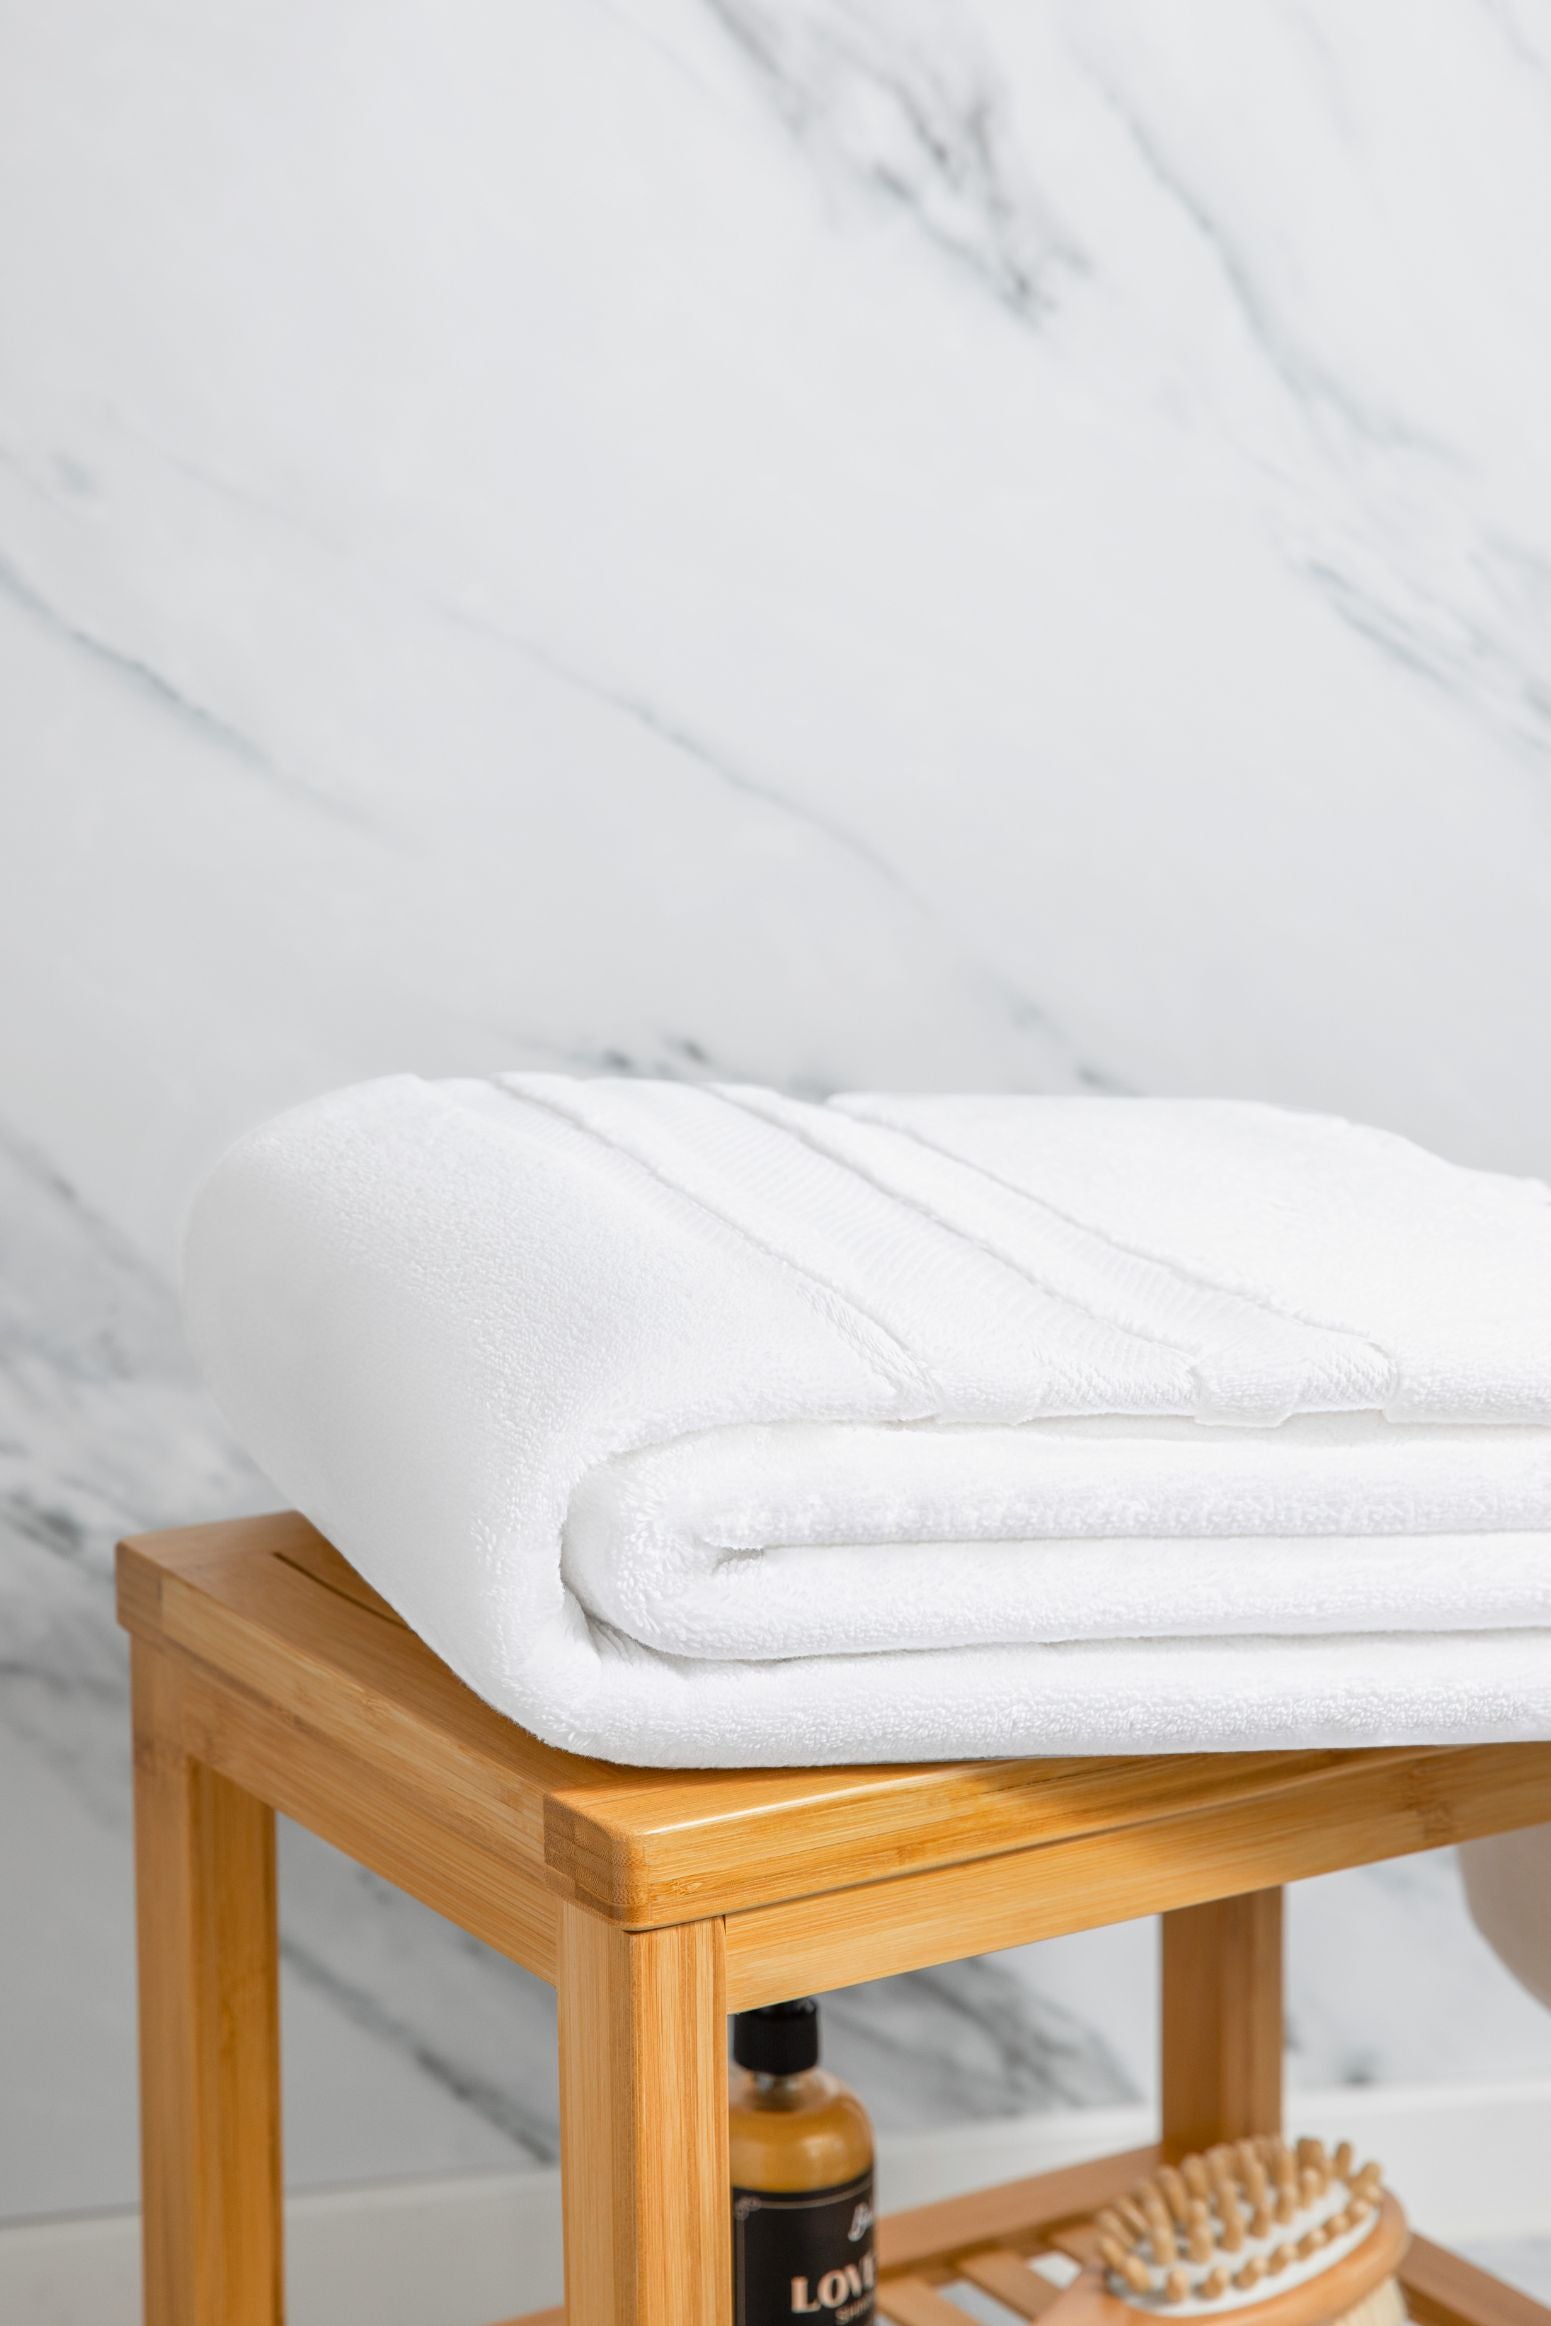 ClearloveWL Bath Towel Large Cotton Bath Shower Towel Thick Towels